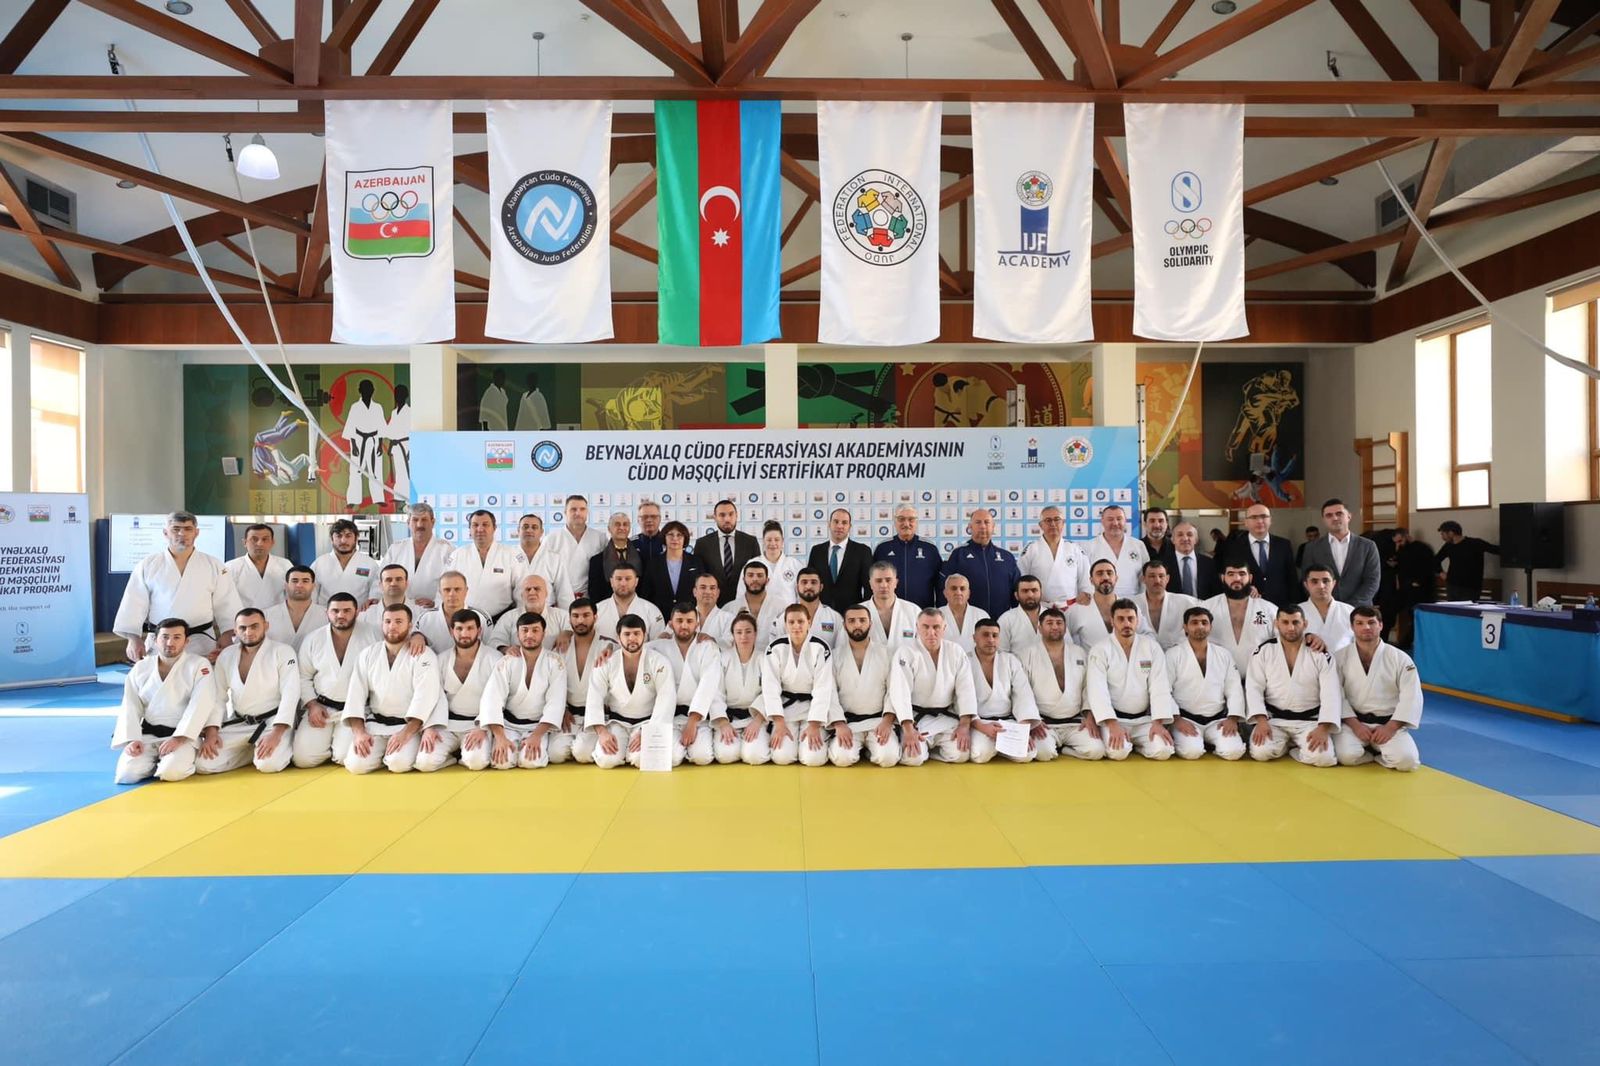 img/posts/judo-club-2012nin-mesqcilerine-sertifikatlar-teqdim-edilib-2023-02-19-225714/2.jpg